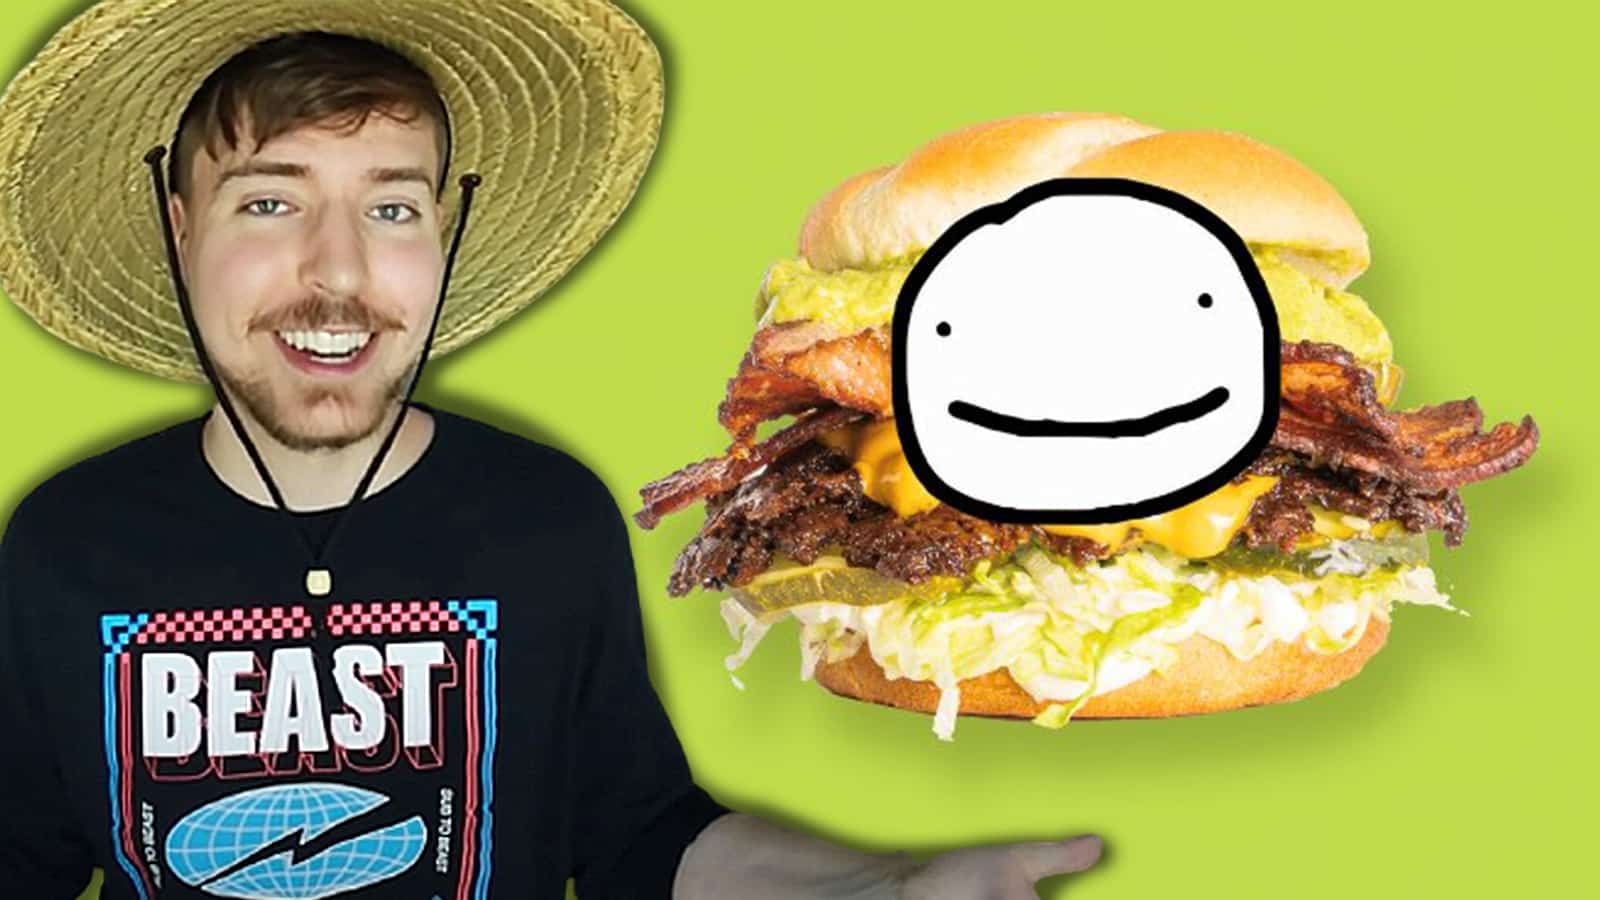 Dream announces burger MrBeast Burger